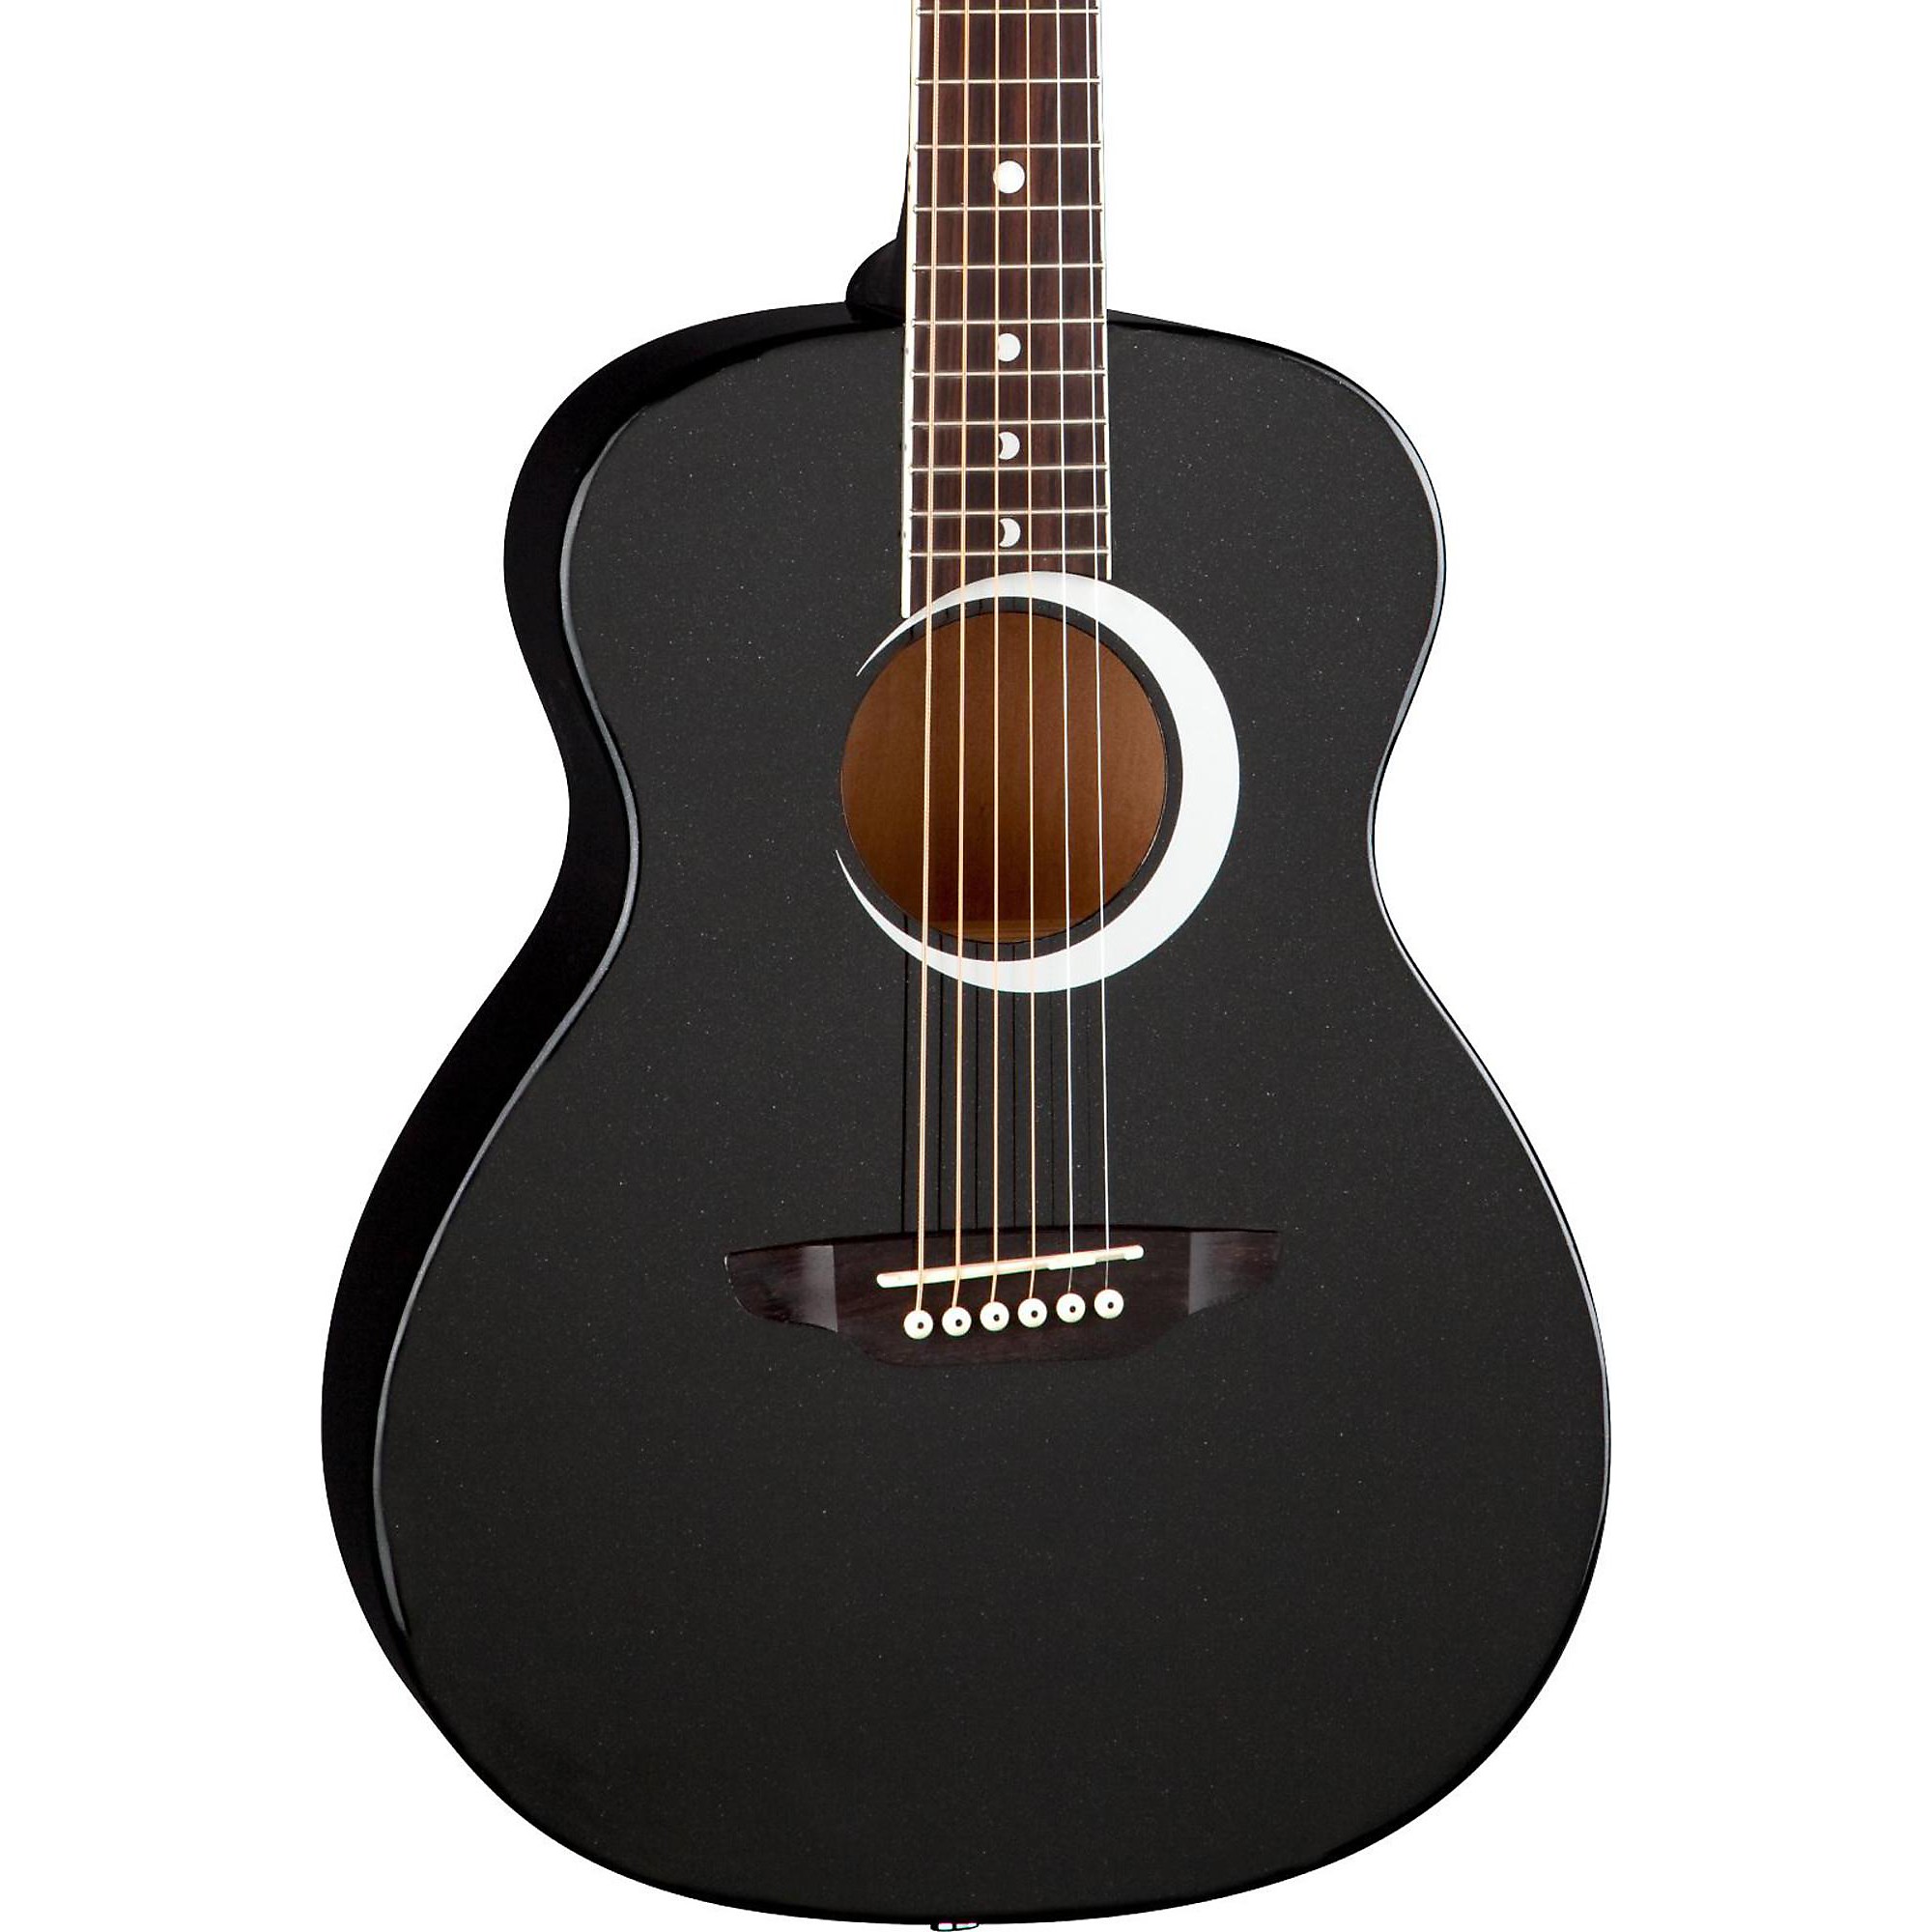 Акустическая гитара Luna Aurora Borealis, размер 3/4, черная блестка